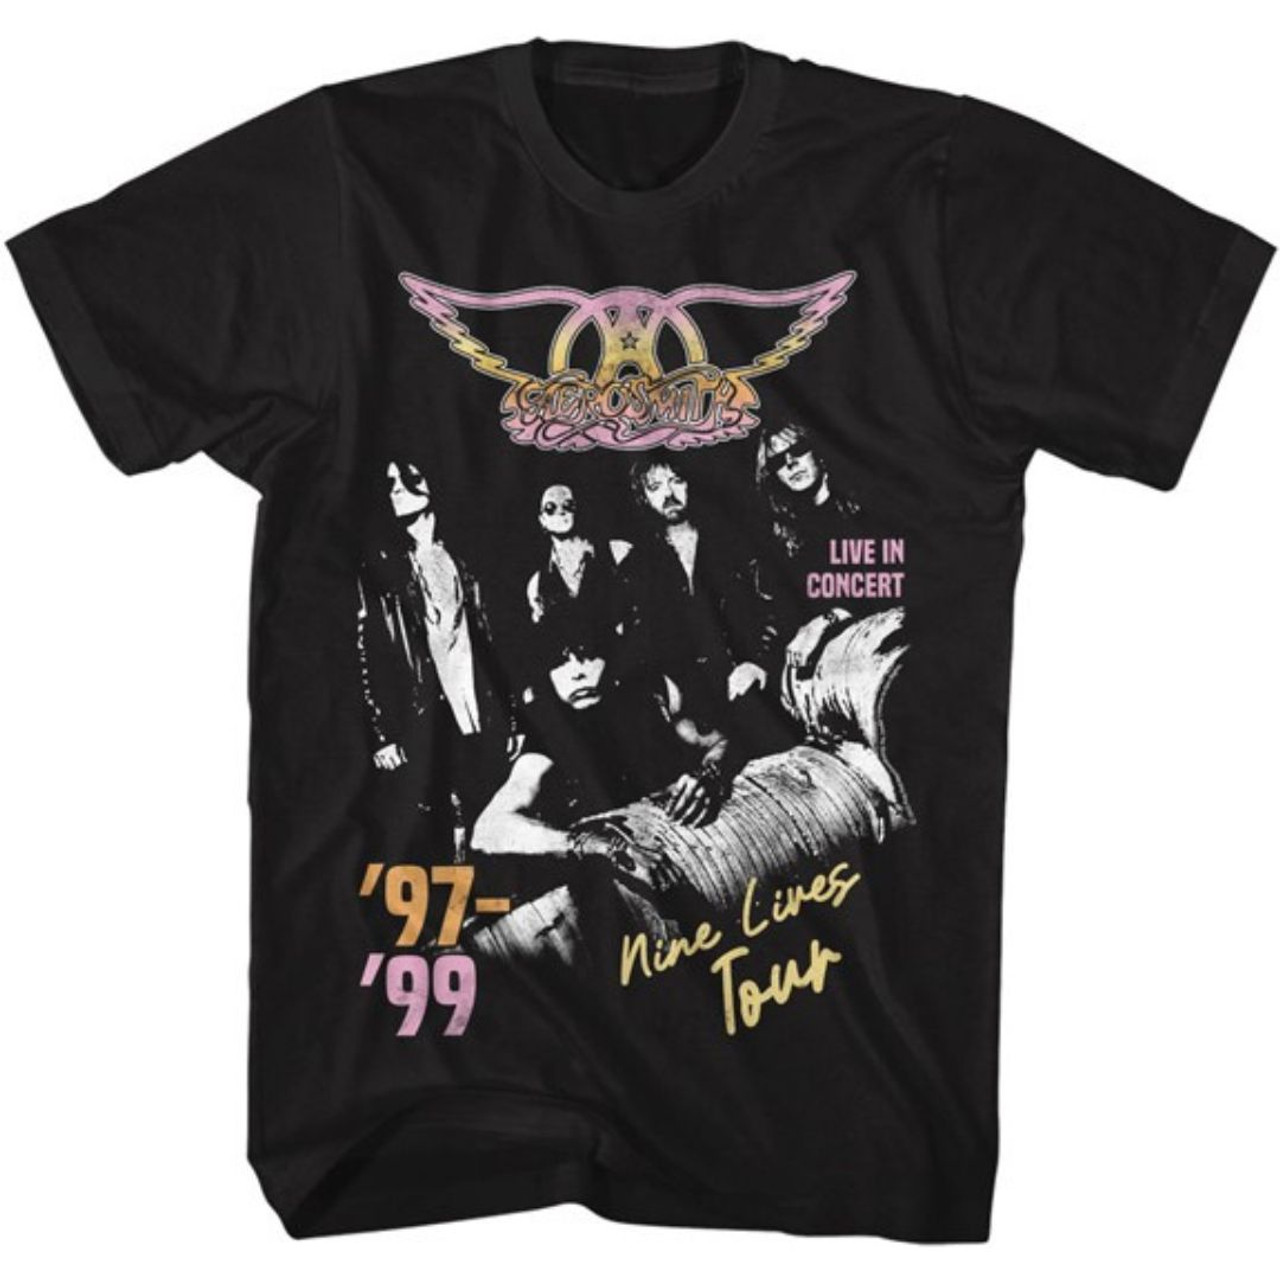 Aerosmith Nine Lives Tour '97-'99 Men's Unisex Vintage Concert T-shirt